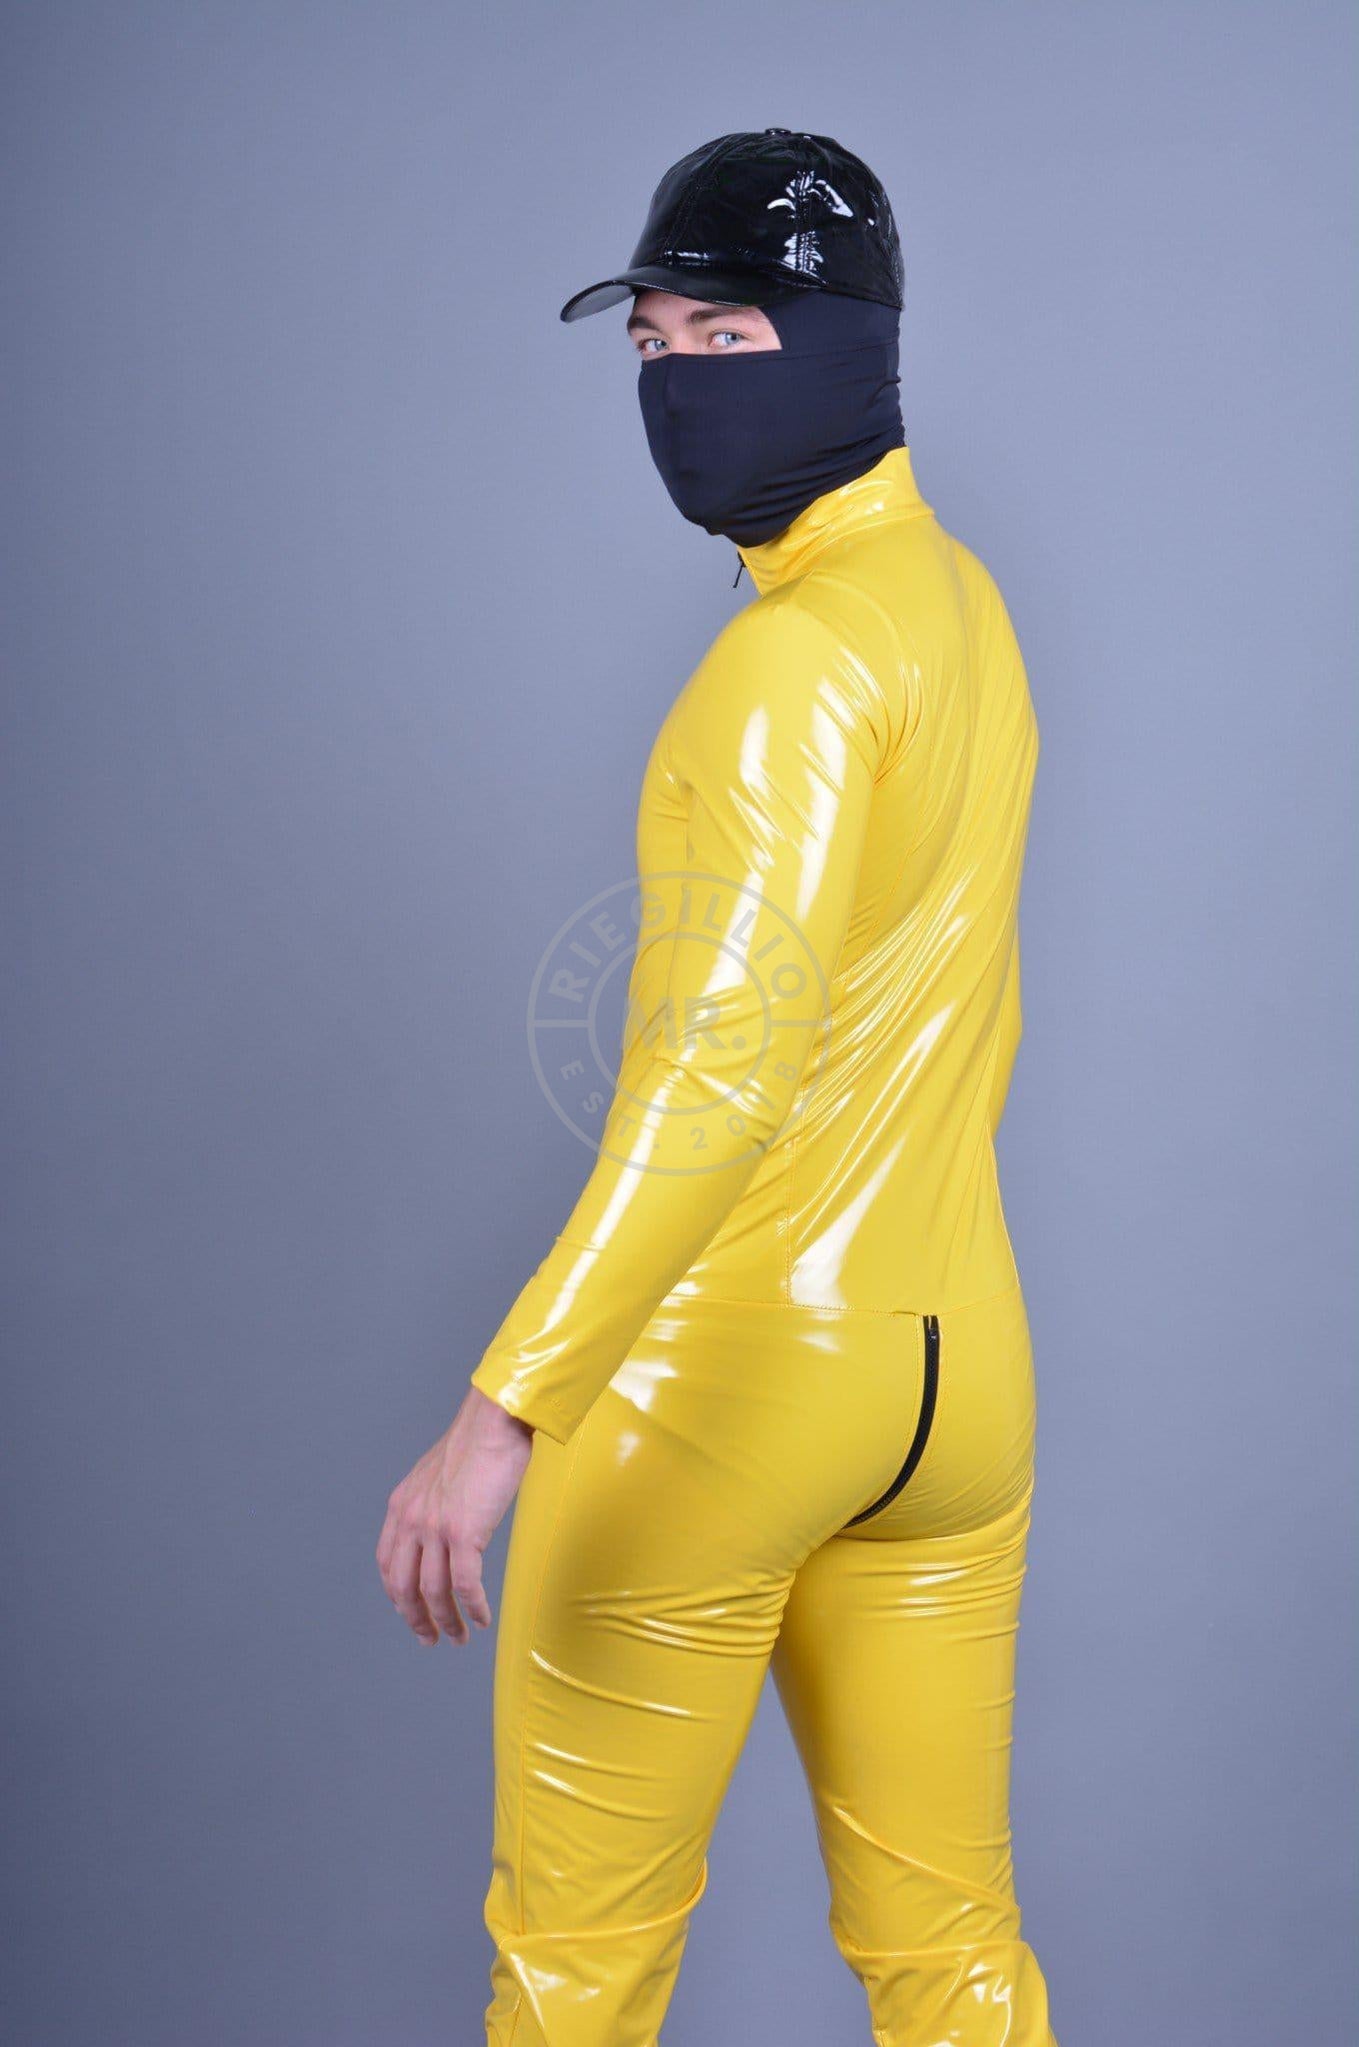 Yellow PVC Bodysuit at MR. Riegillio